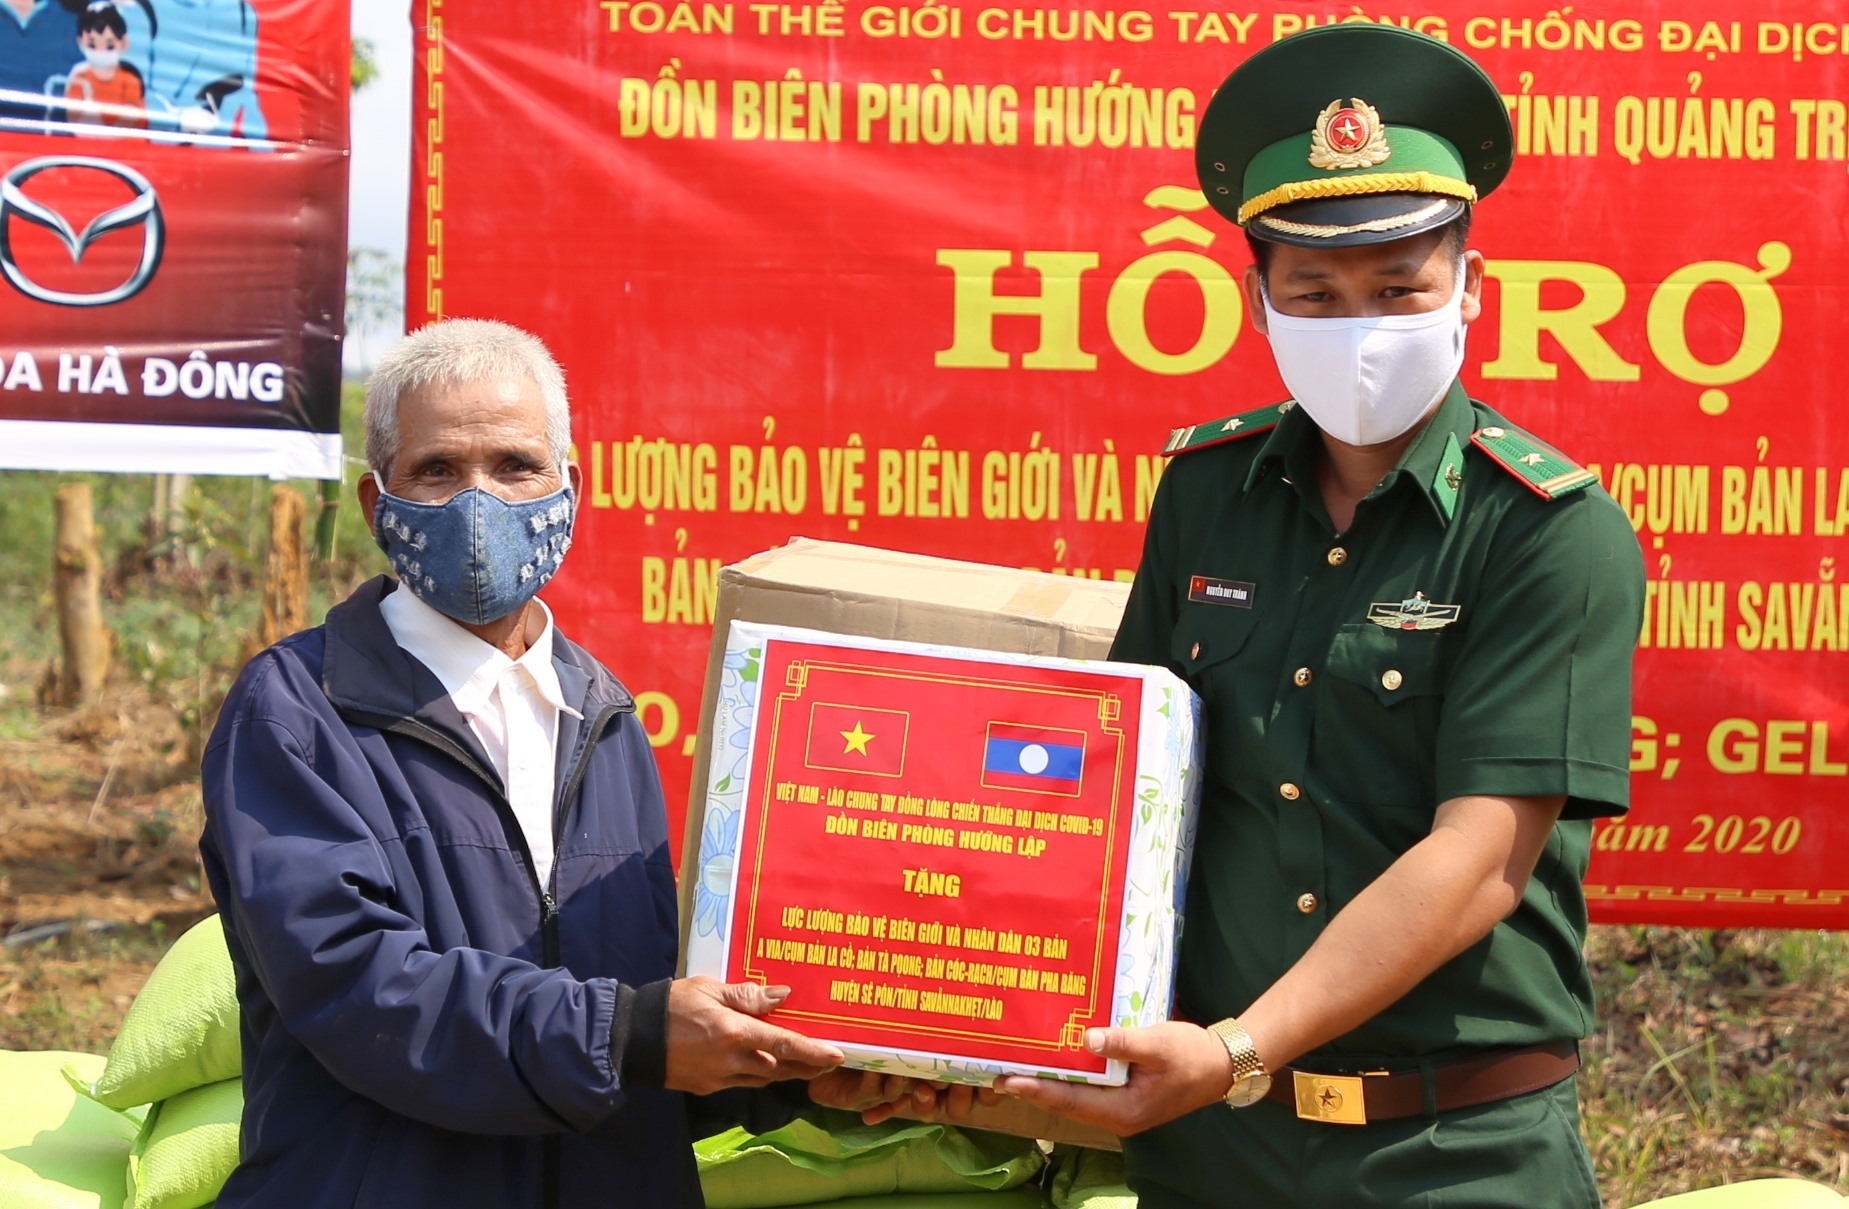 1 tấn gạo cũng được trao cho người dân 3 bản A Via (cụm bản La Cồ), Tà Pọong, Cóc Rạc (thuộc cụm bản Pha Băng) của huyện Sê Pôn, tỉnh Savanakhet, Lào.